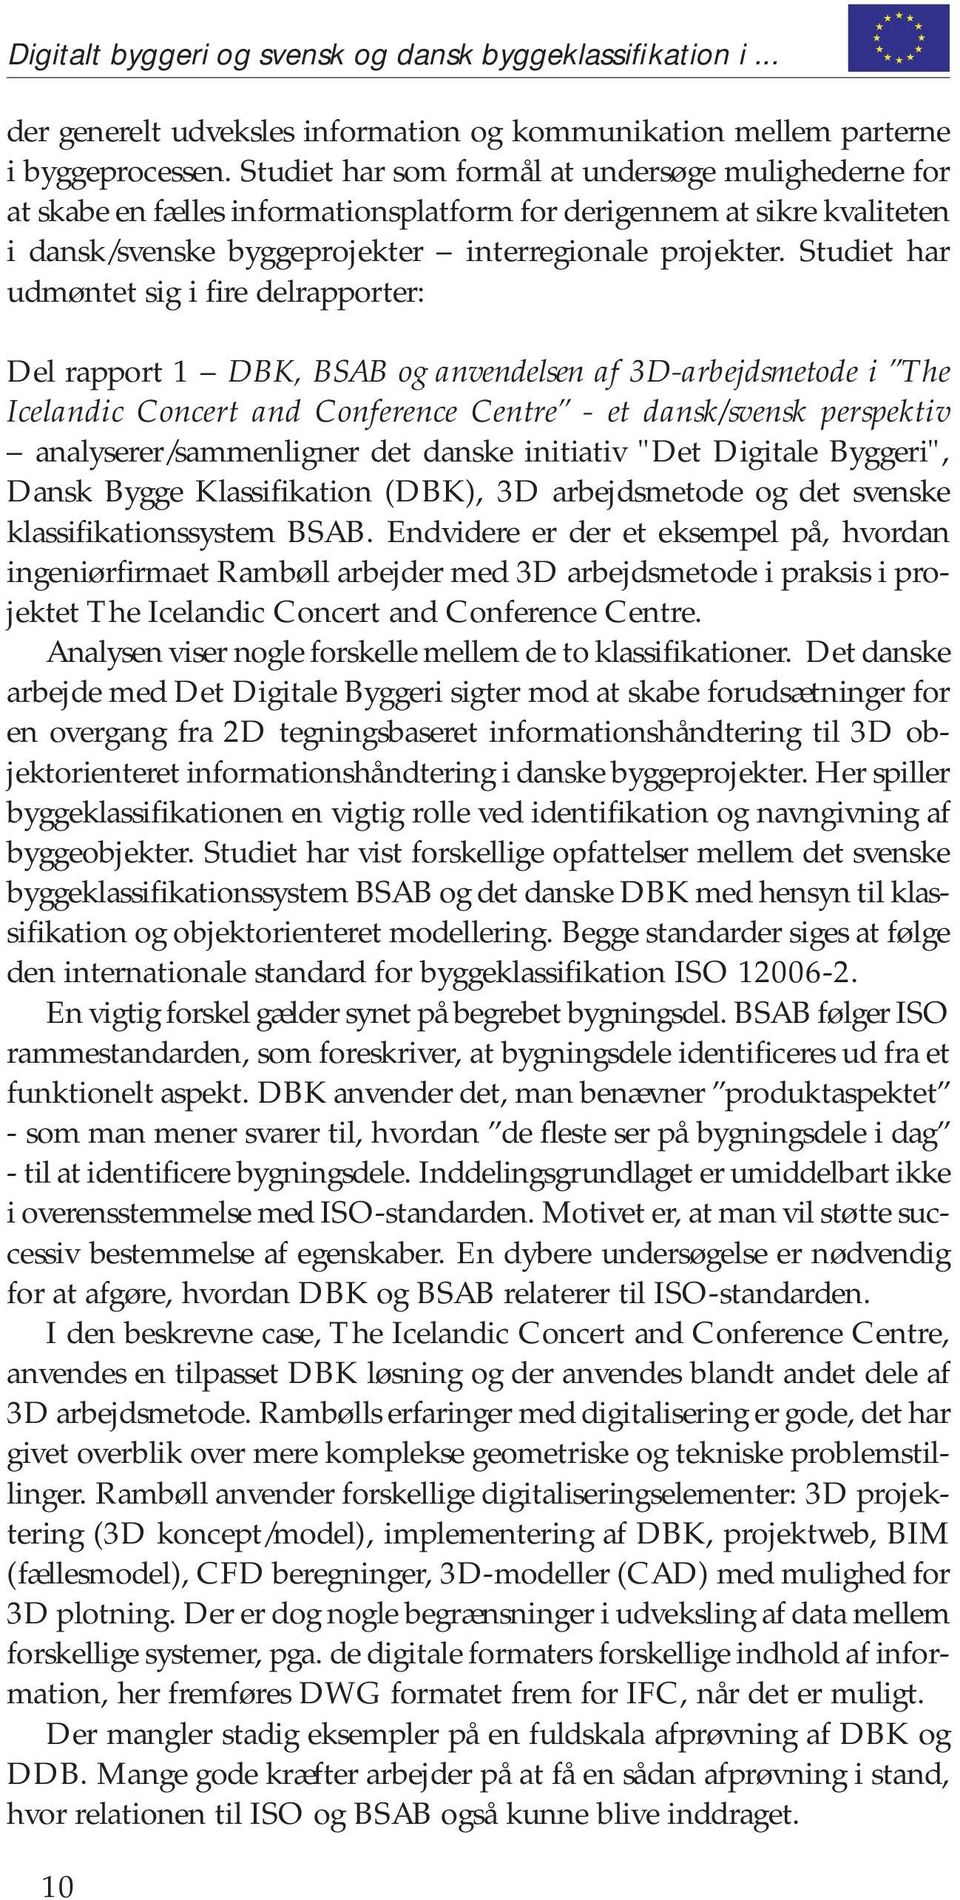 Studiet har udmøntet sig i fire delrapporter: Del rapport 1 DBK, BSAB og anvendelsen af 3D-arbejdsmetode i The Icelandic Concert and Conference Centre - et dansk/svensk perspektiv